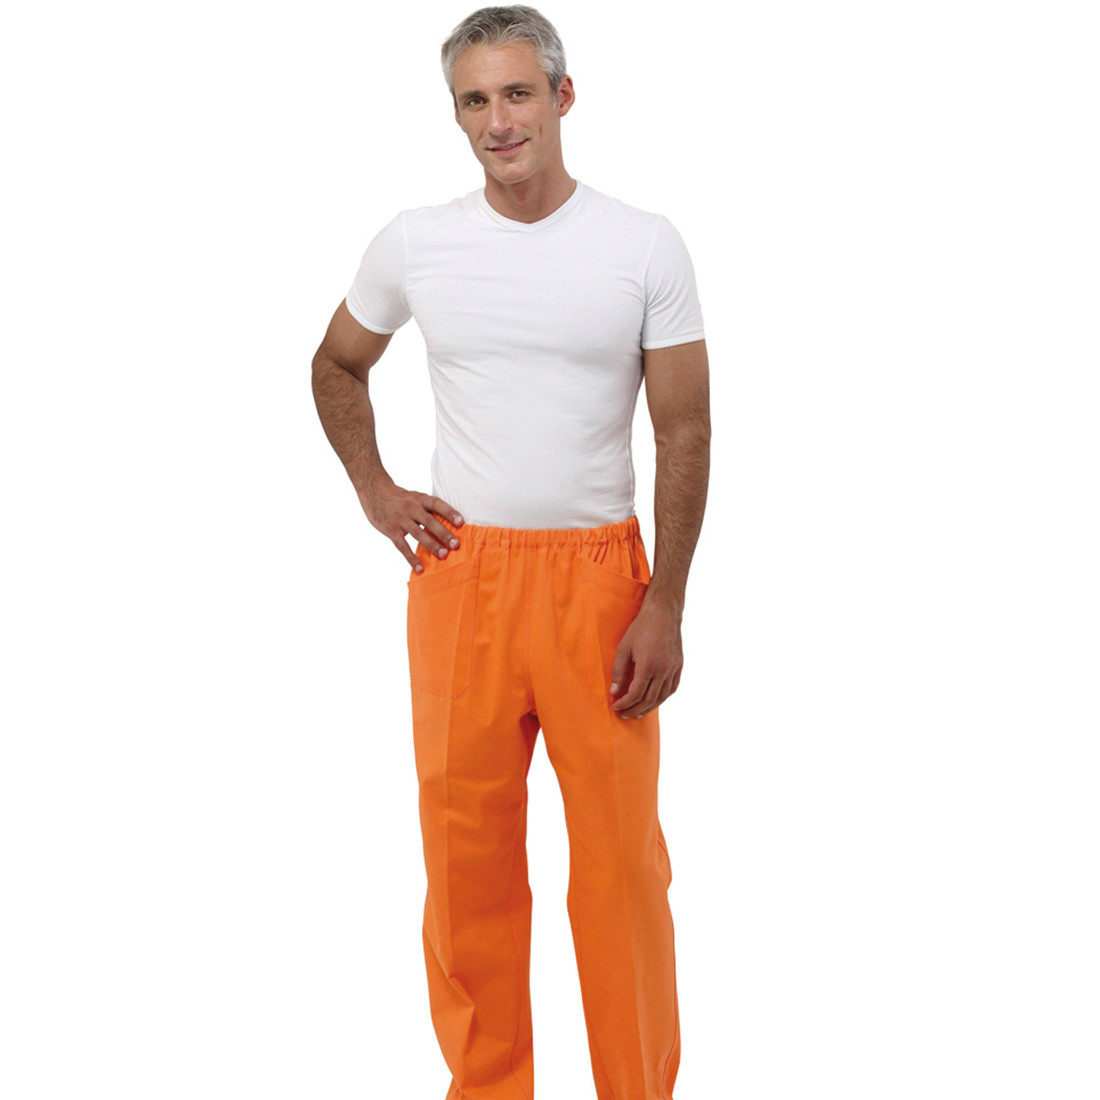 Pantalon médical STAR II unisex - Les vêtements de protection